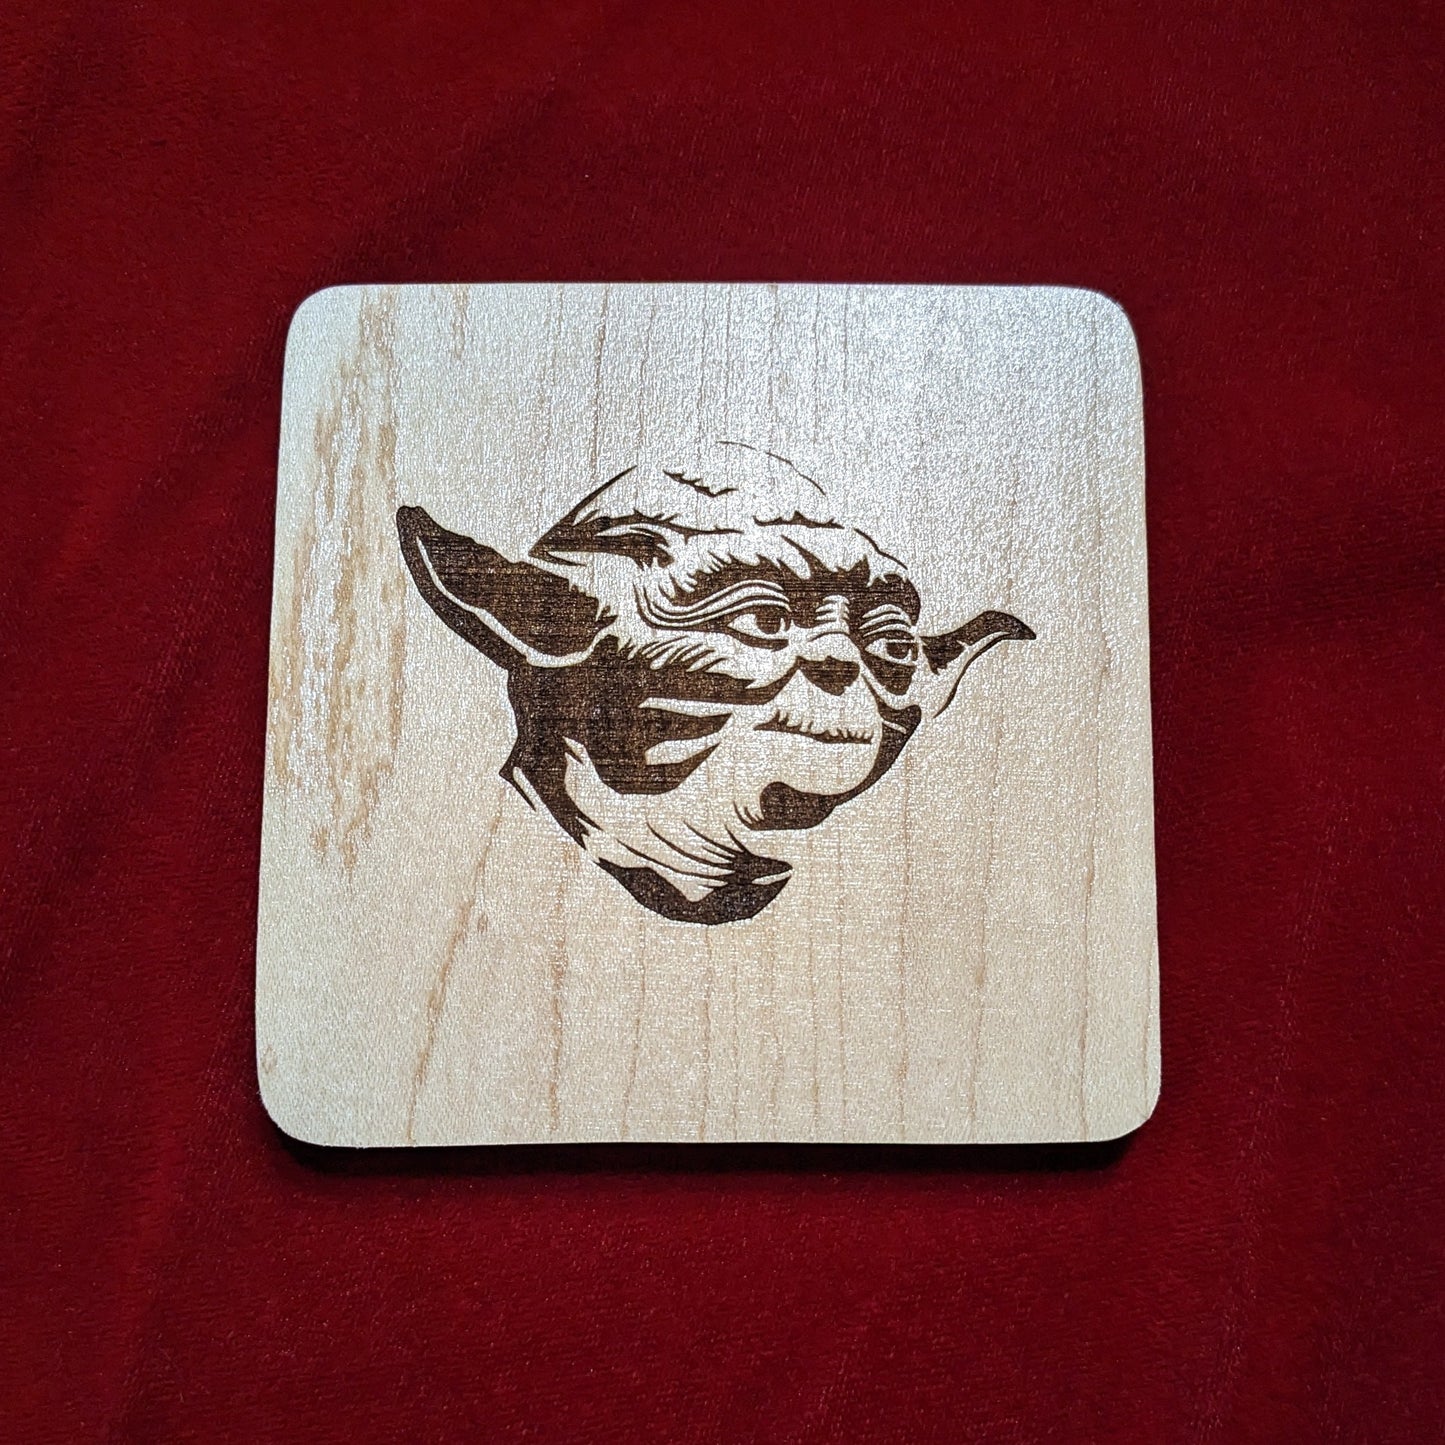 Star Wars Yoda Coaster